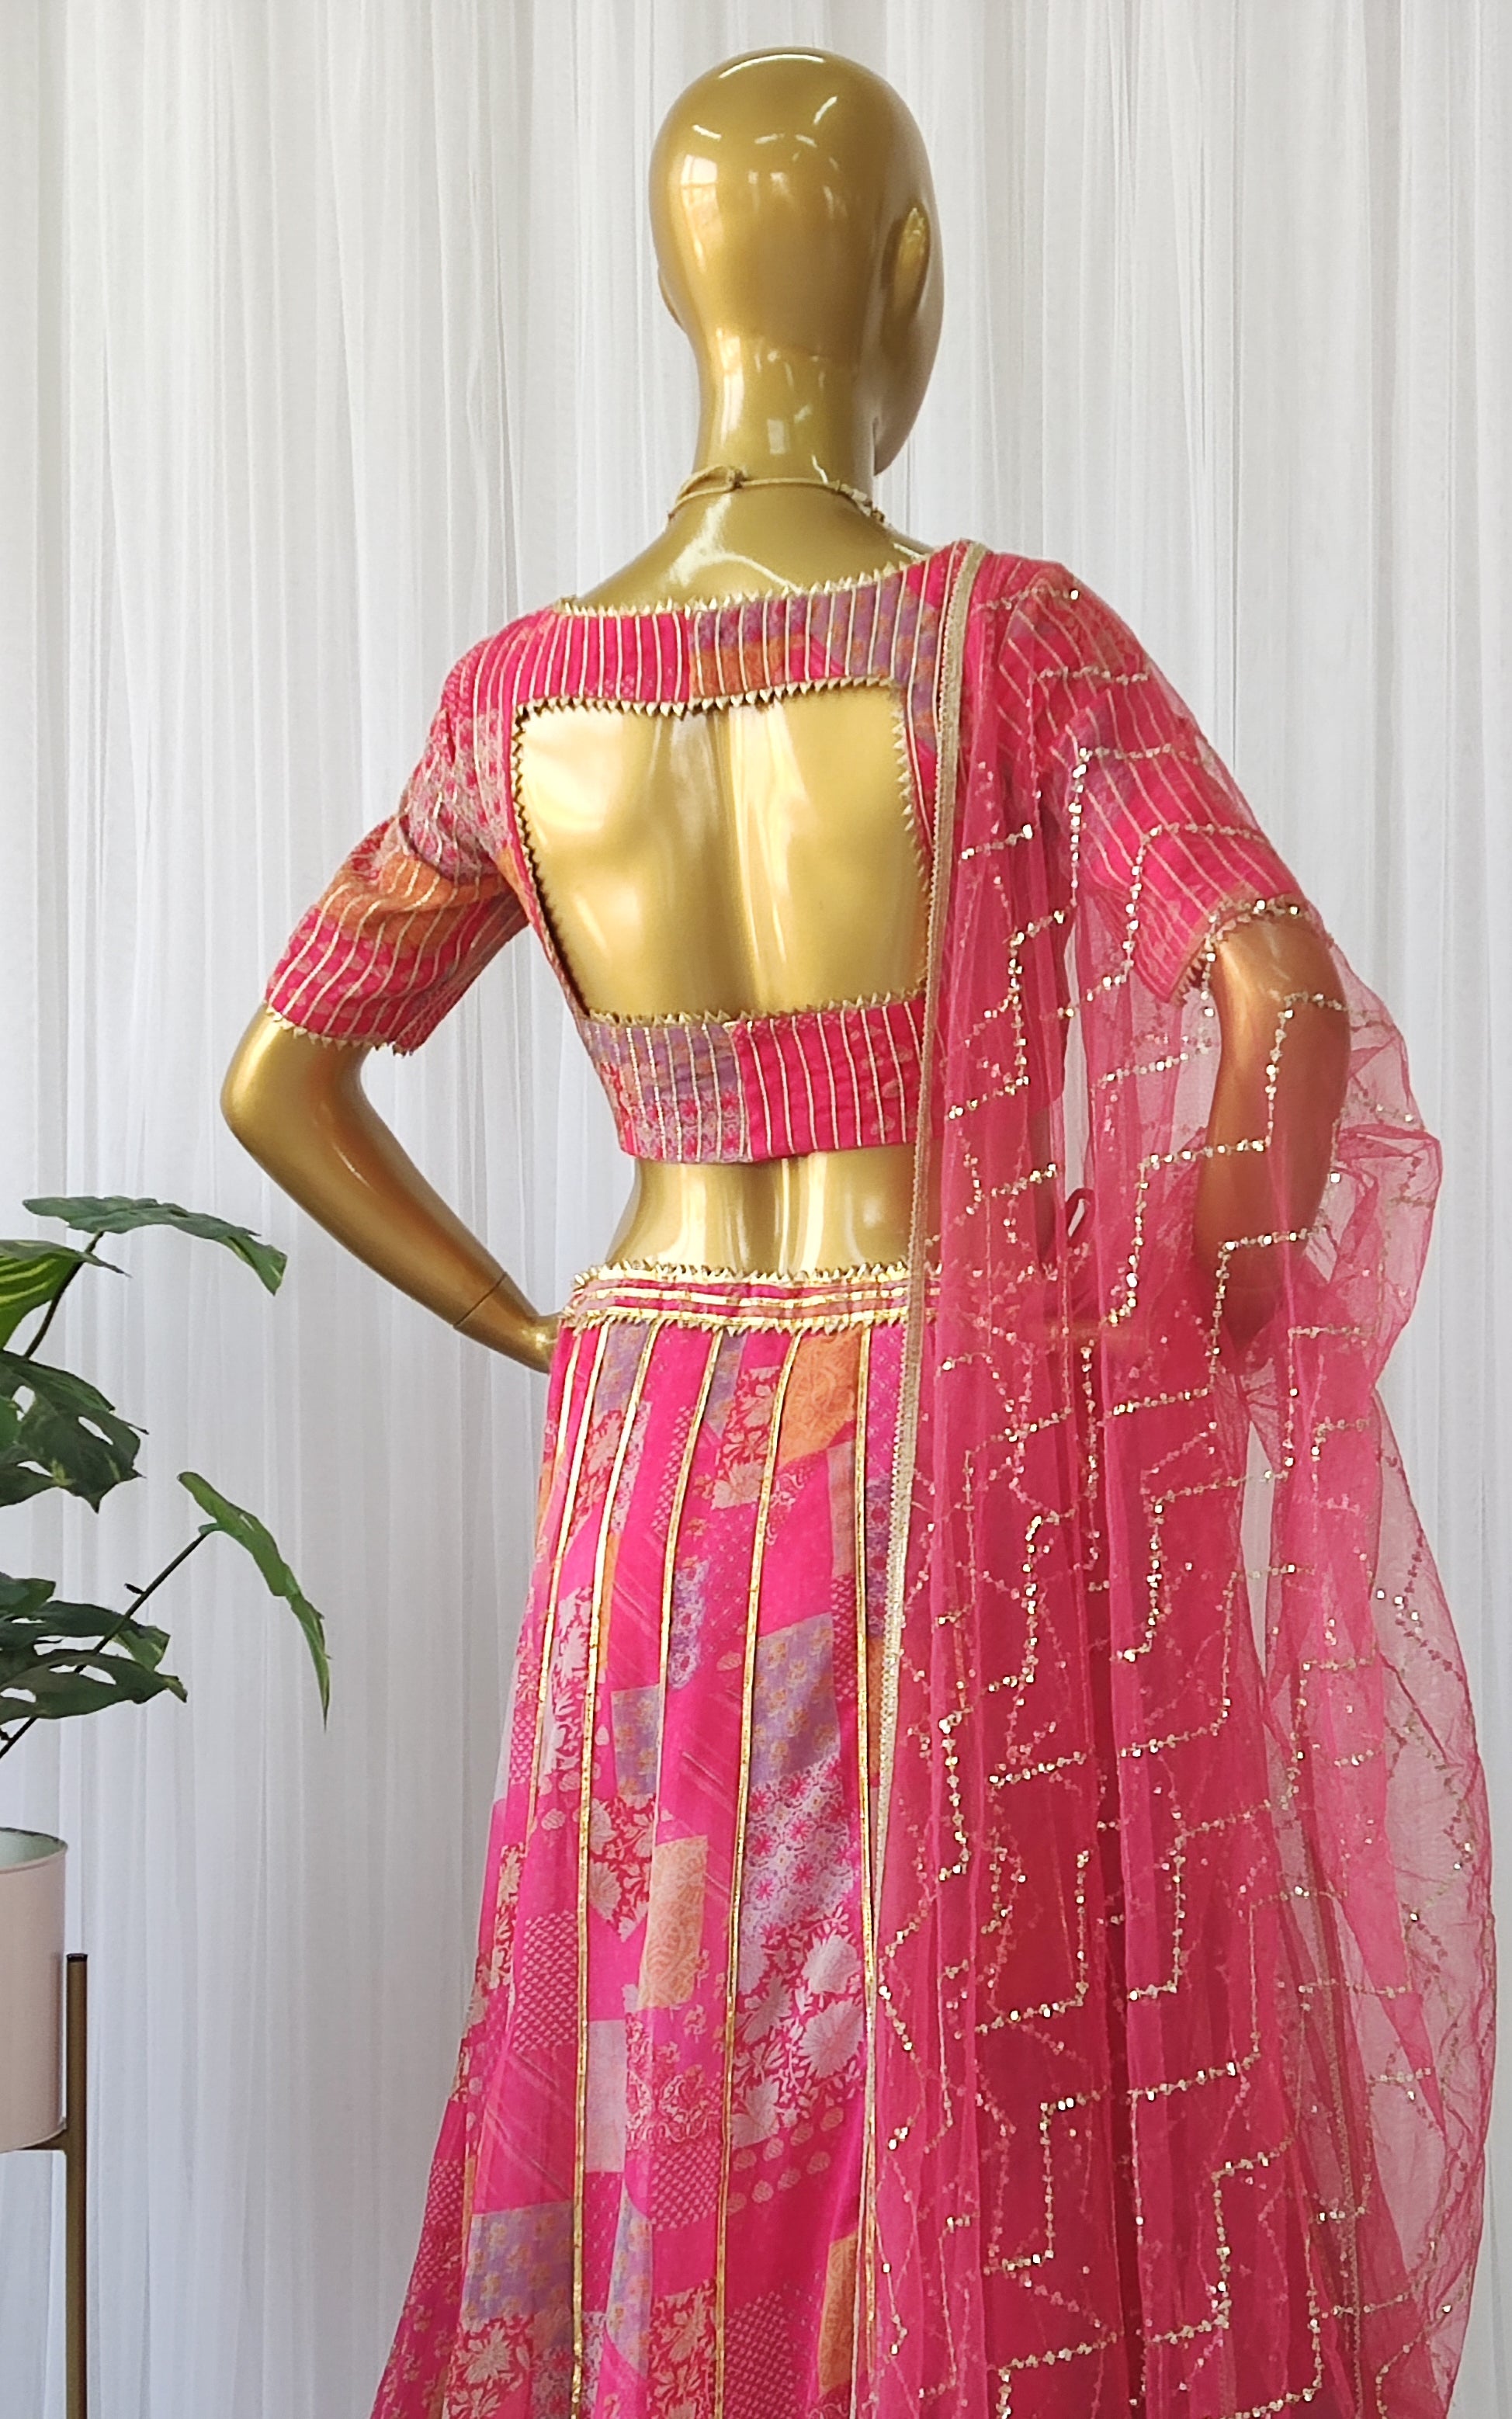 Nandita Swetha in a pink lehenga set!